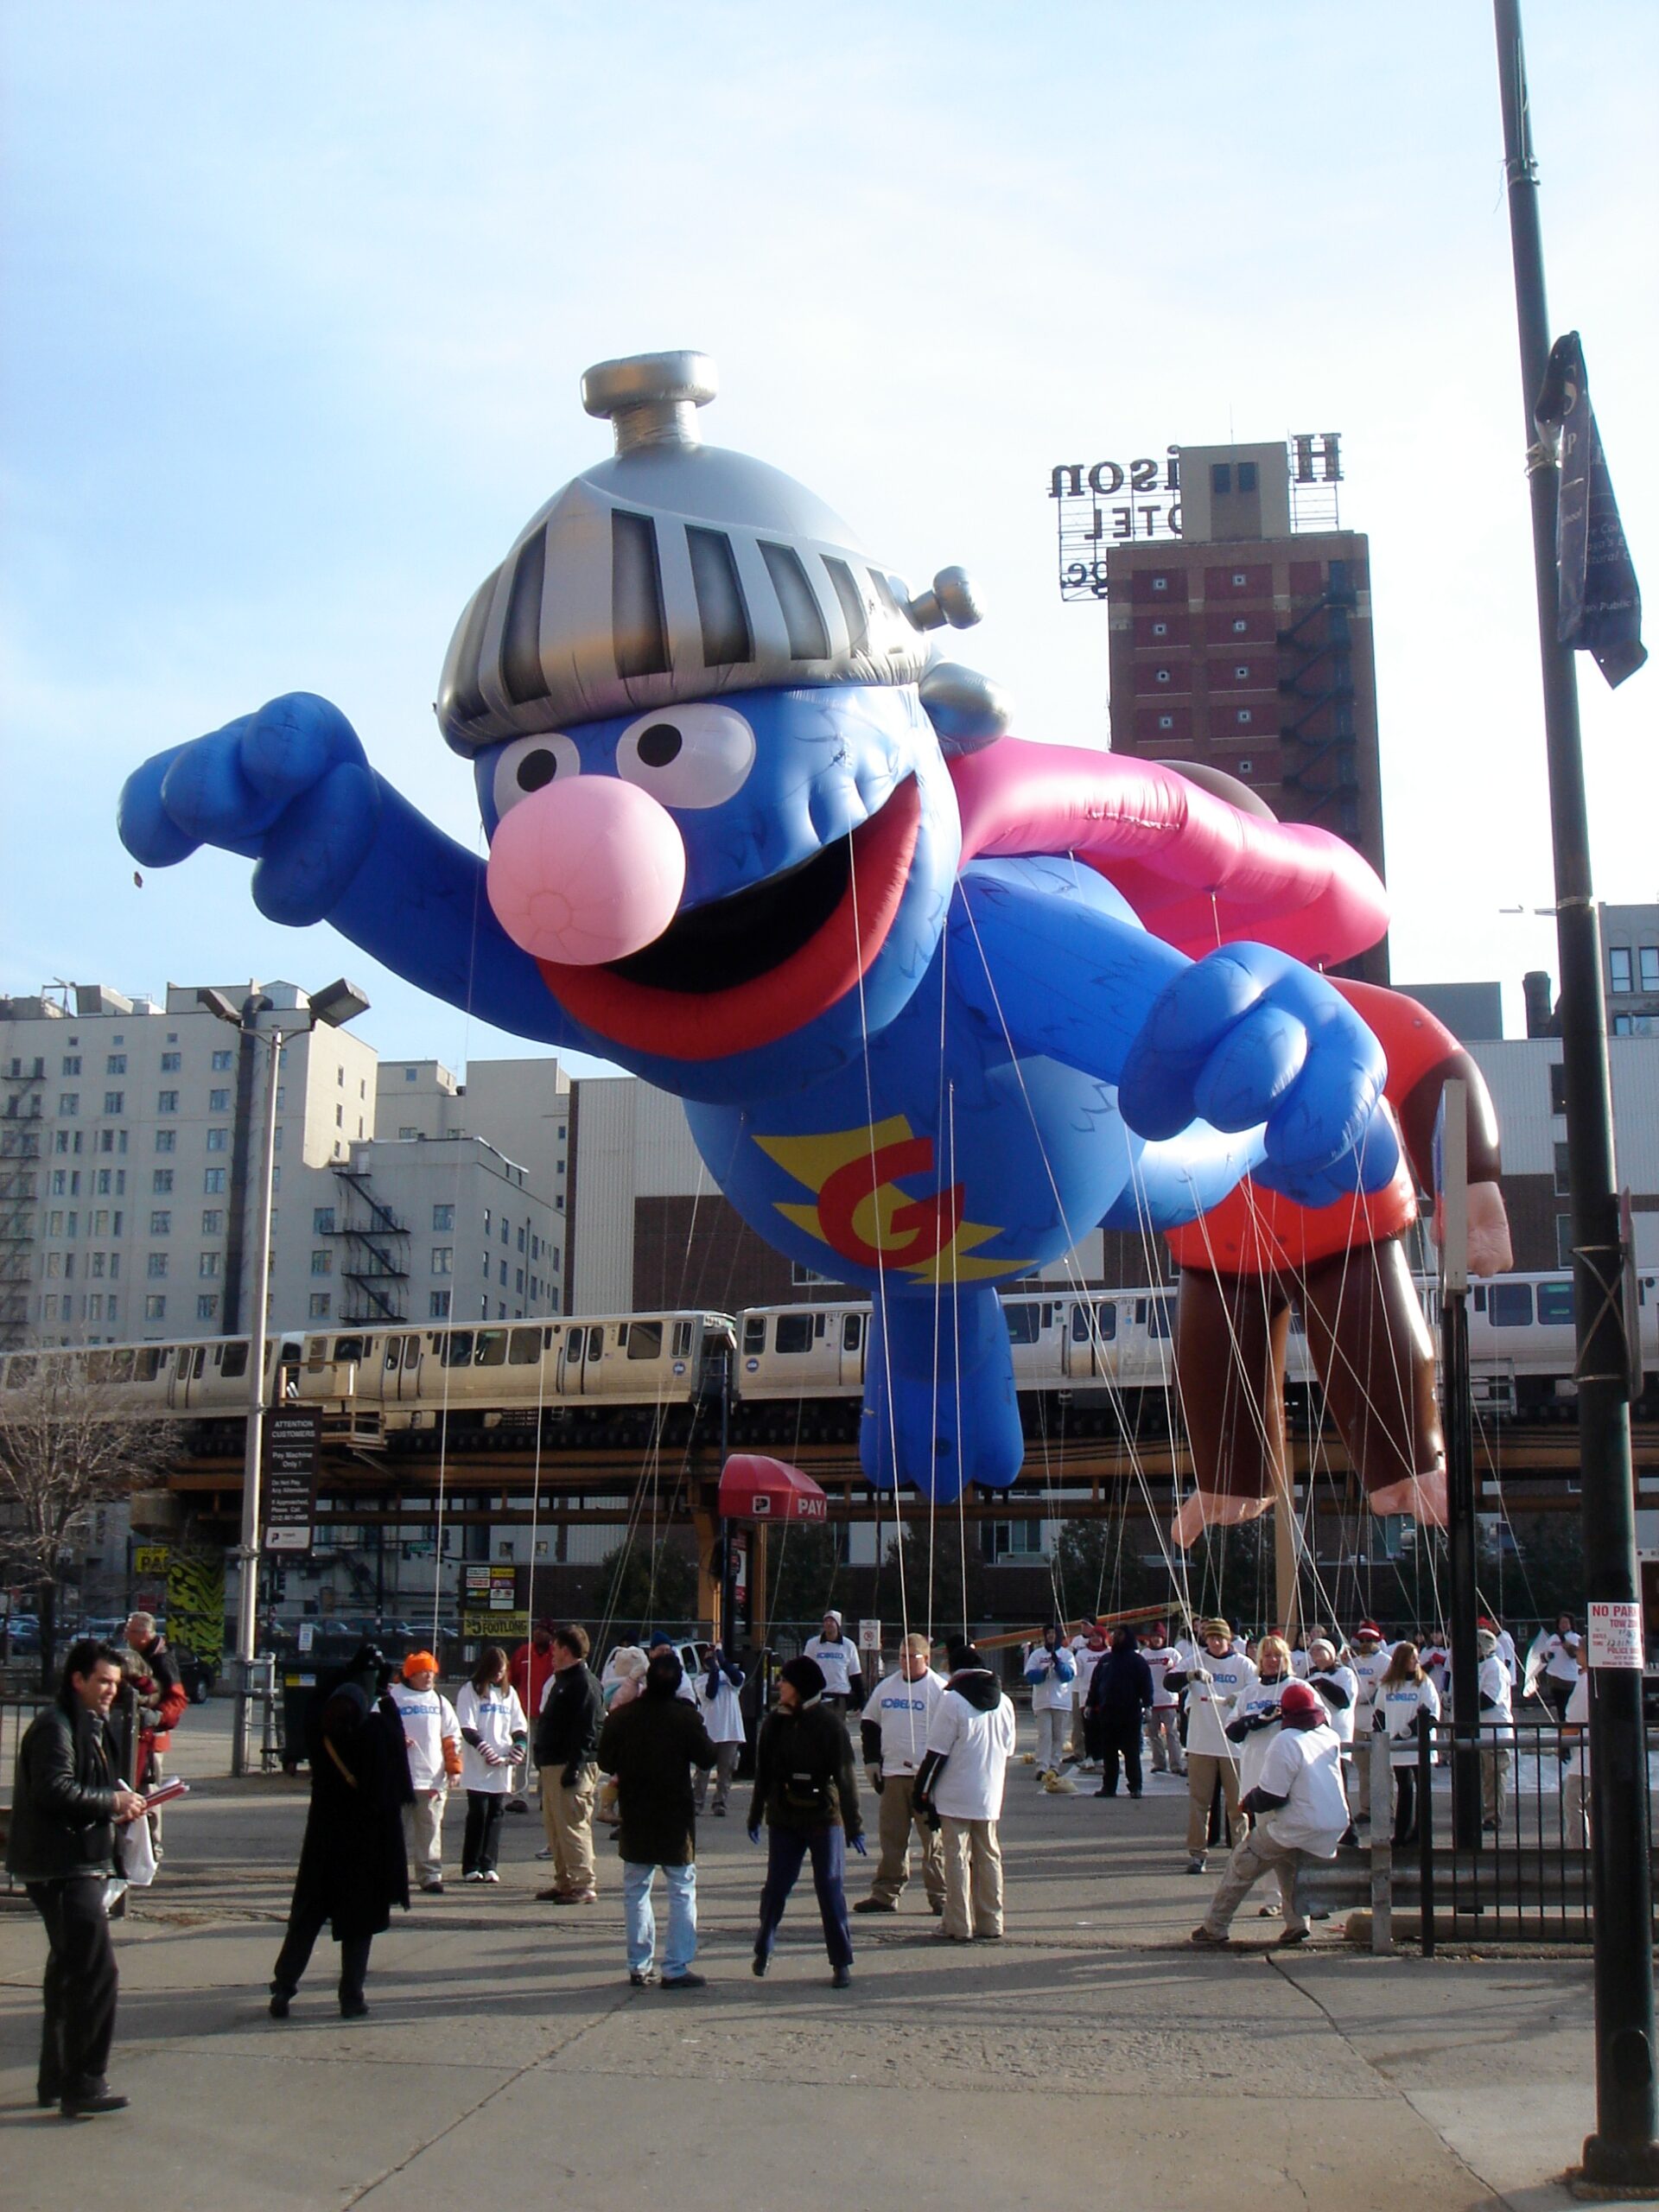 Super Grover Parade Balloon